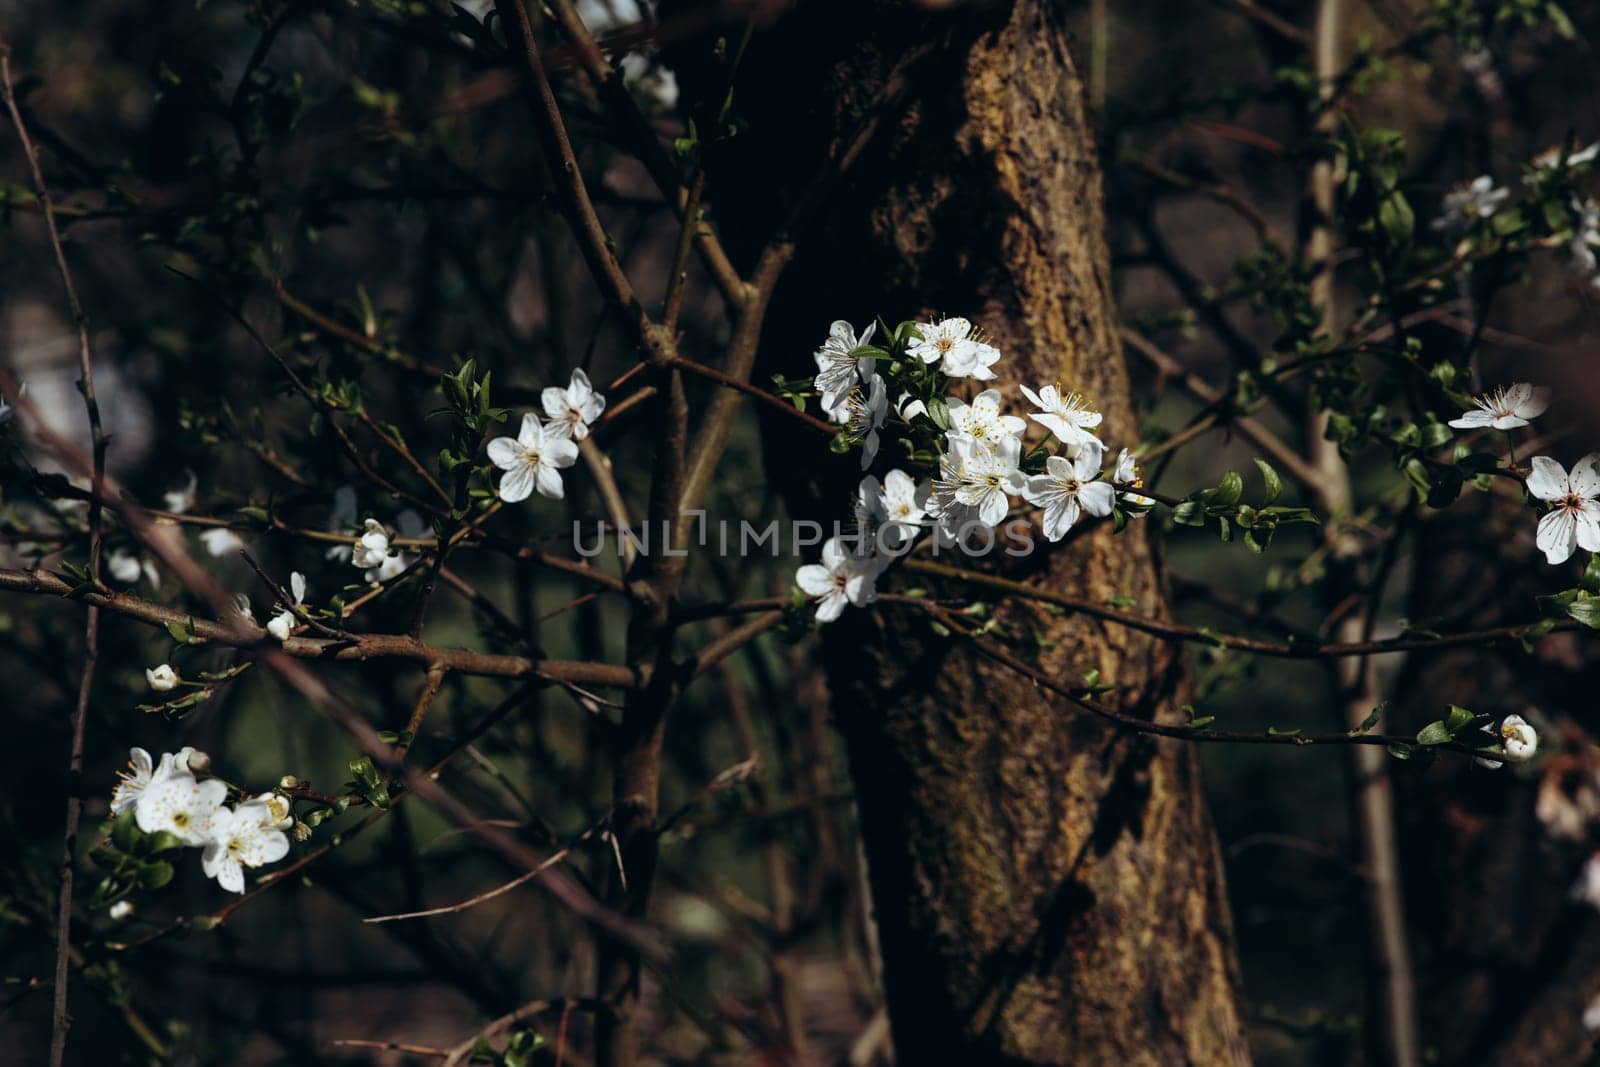 trees and leaves bloom in spring by IvanDerkachphoto